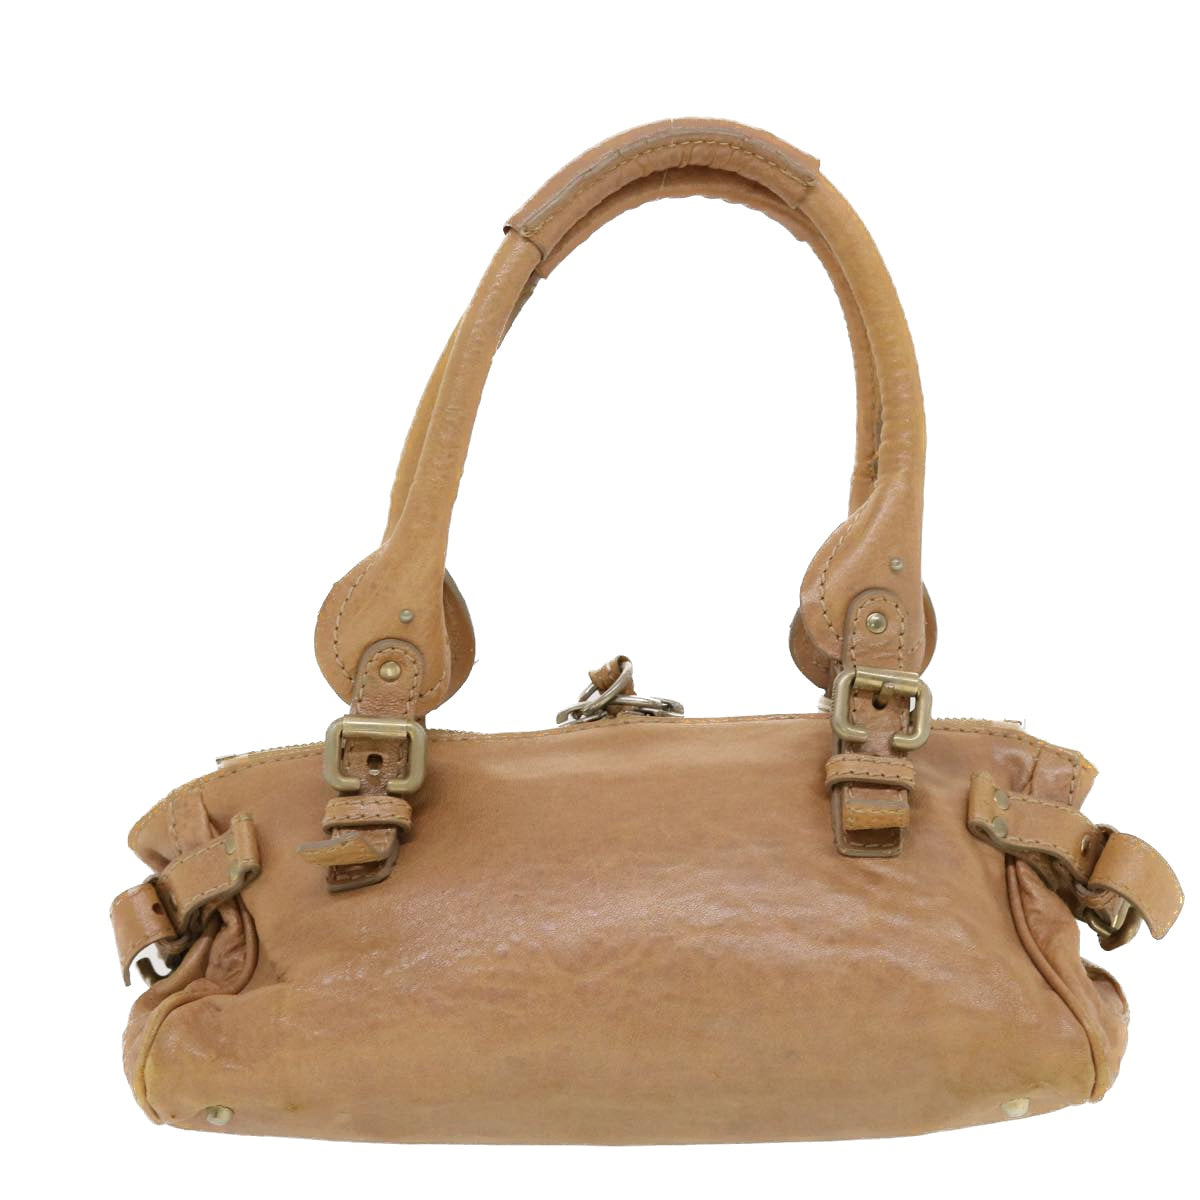 Chloe Paddington Hand Bag Leather Brown Auth bs5678 - 0